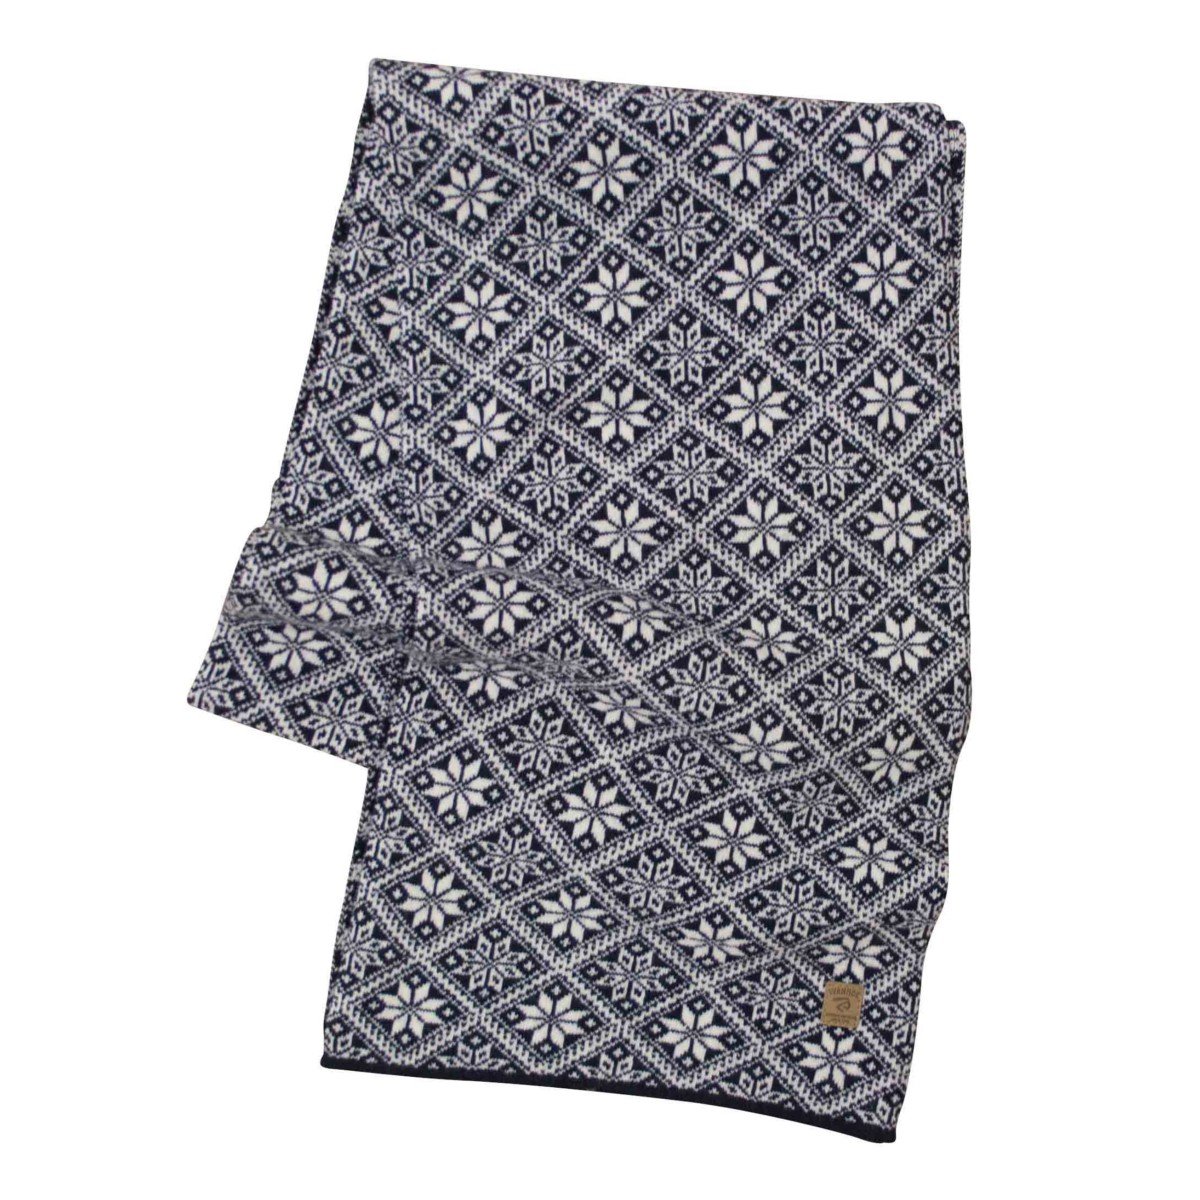 Ivanhoe gebreide sjaal van wol Elsie Navy 2020 - One Size 185x27 Blauw